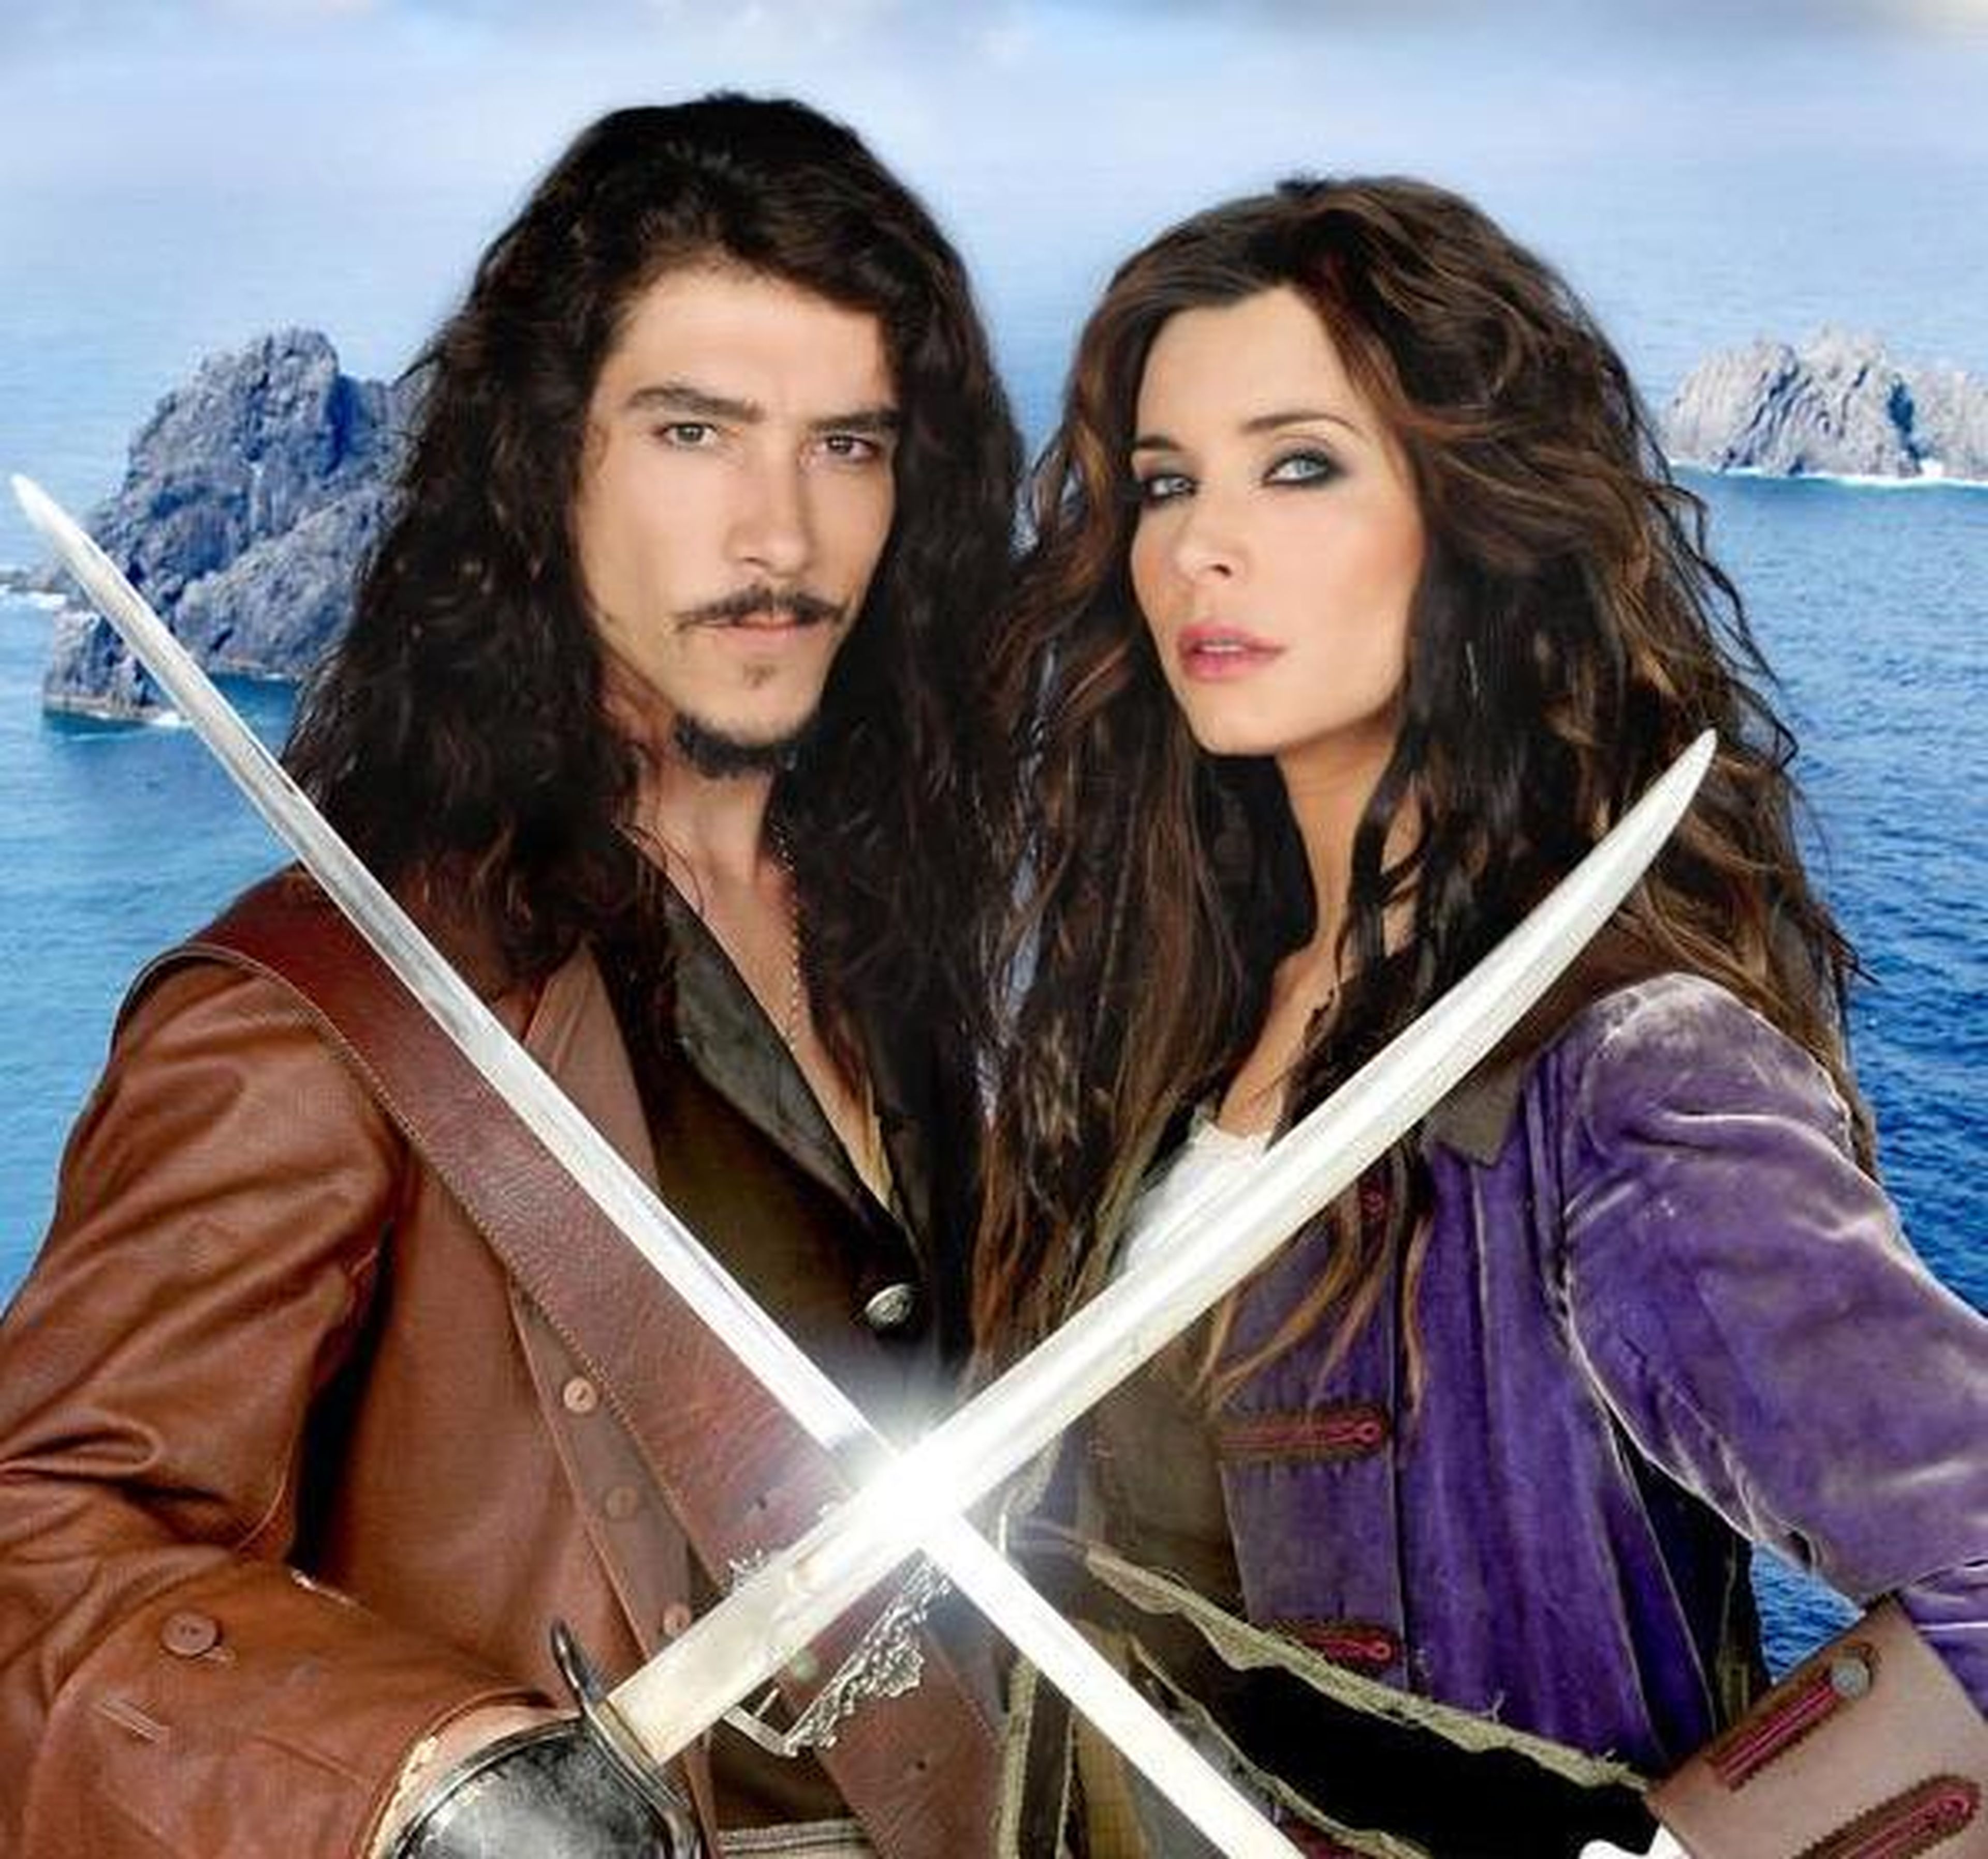 Oscar Jaenada y Pilar Rubio en el cartel promocional de Piratas.